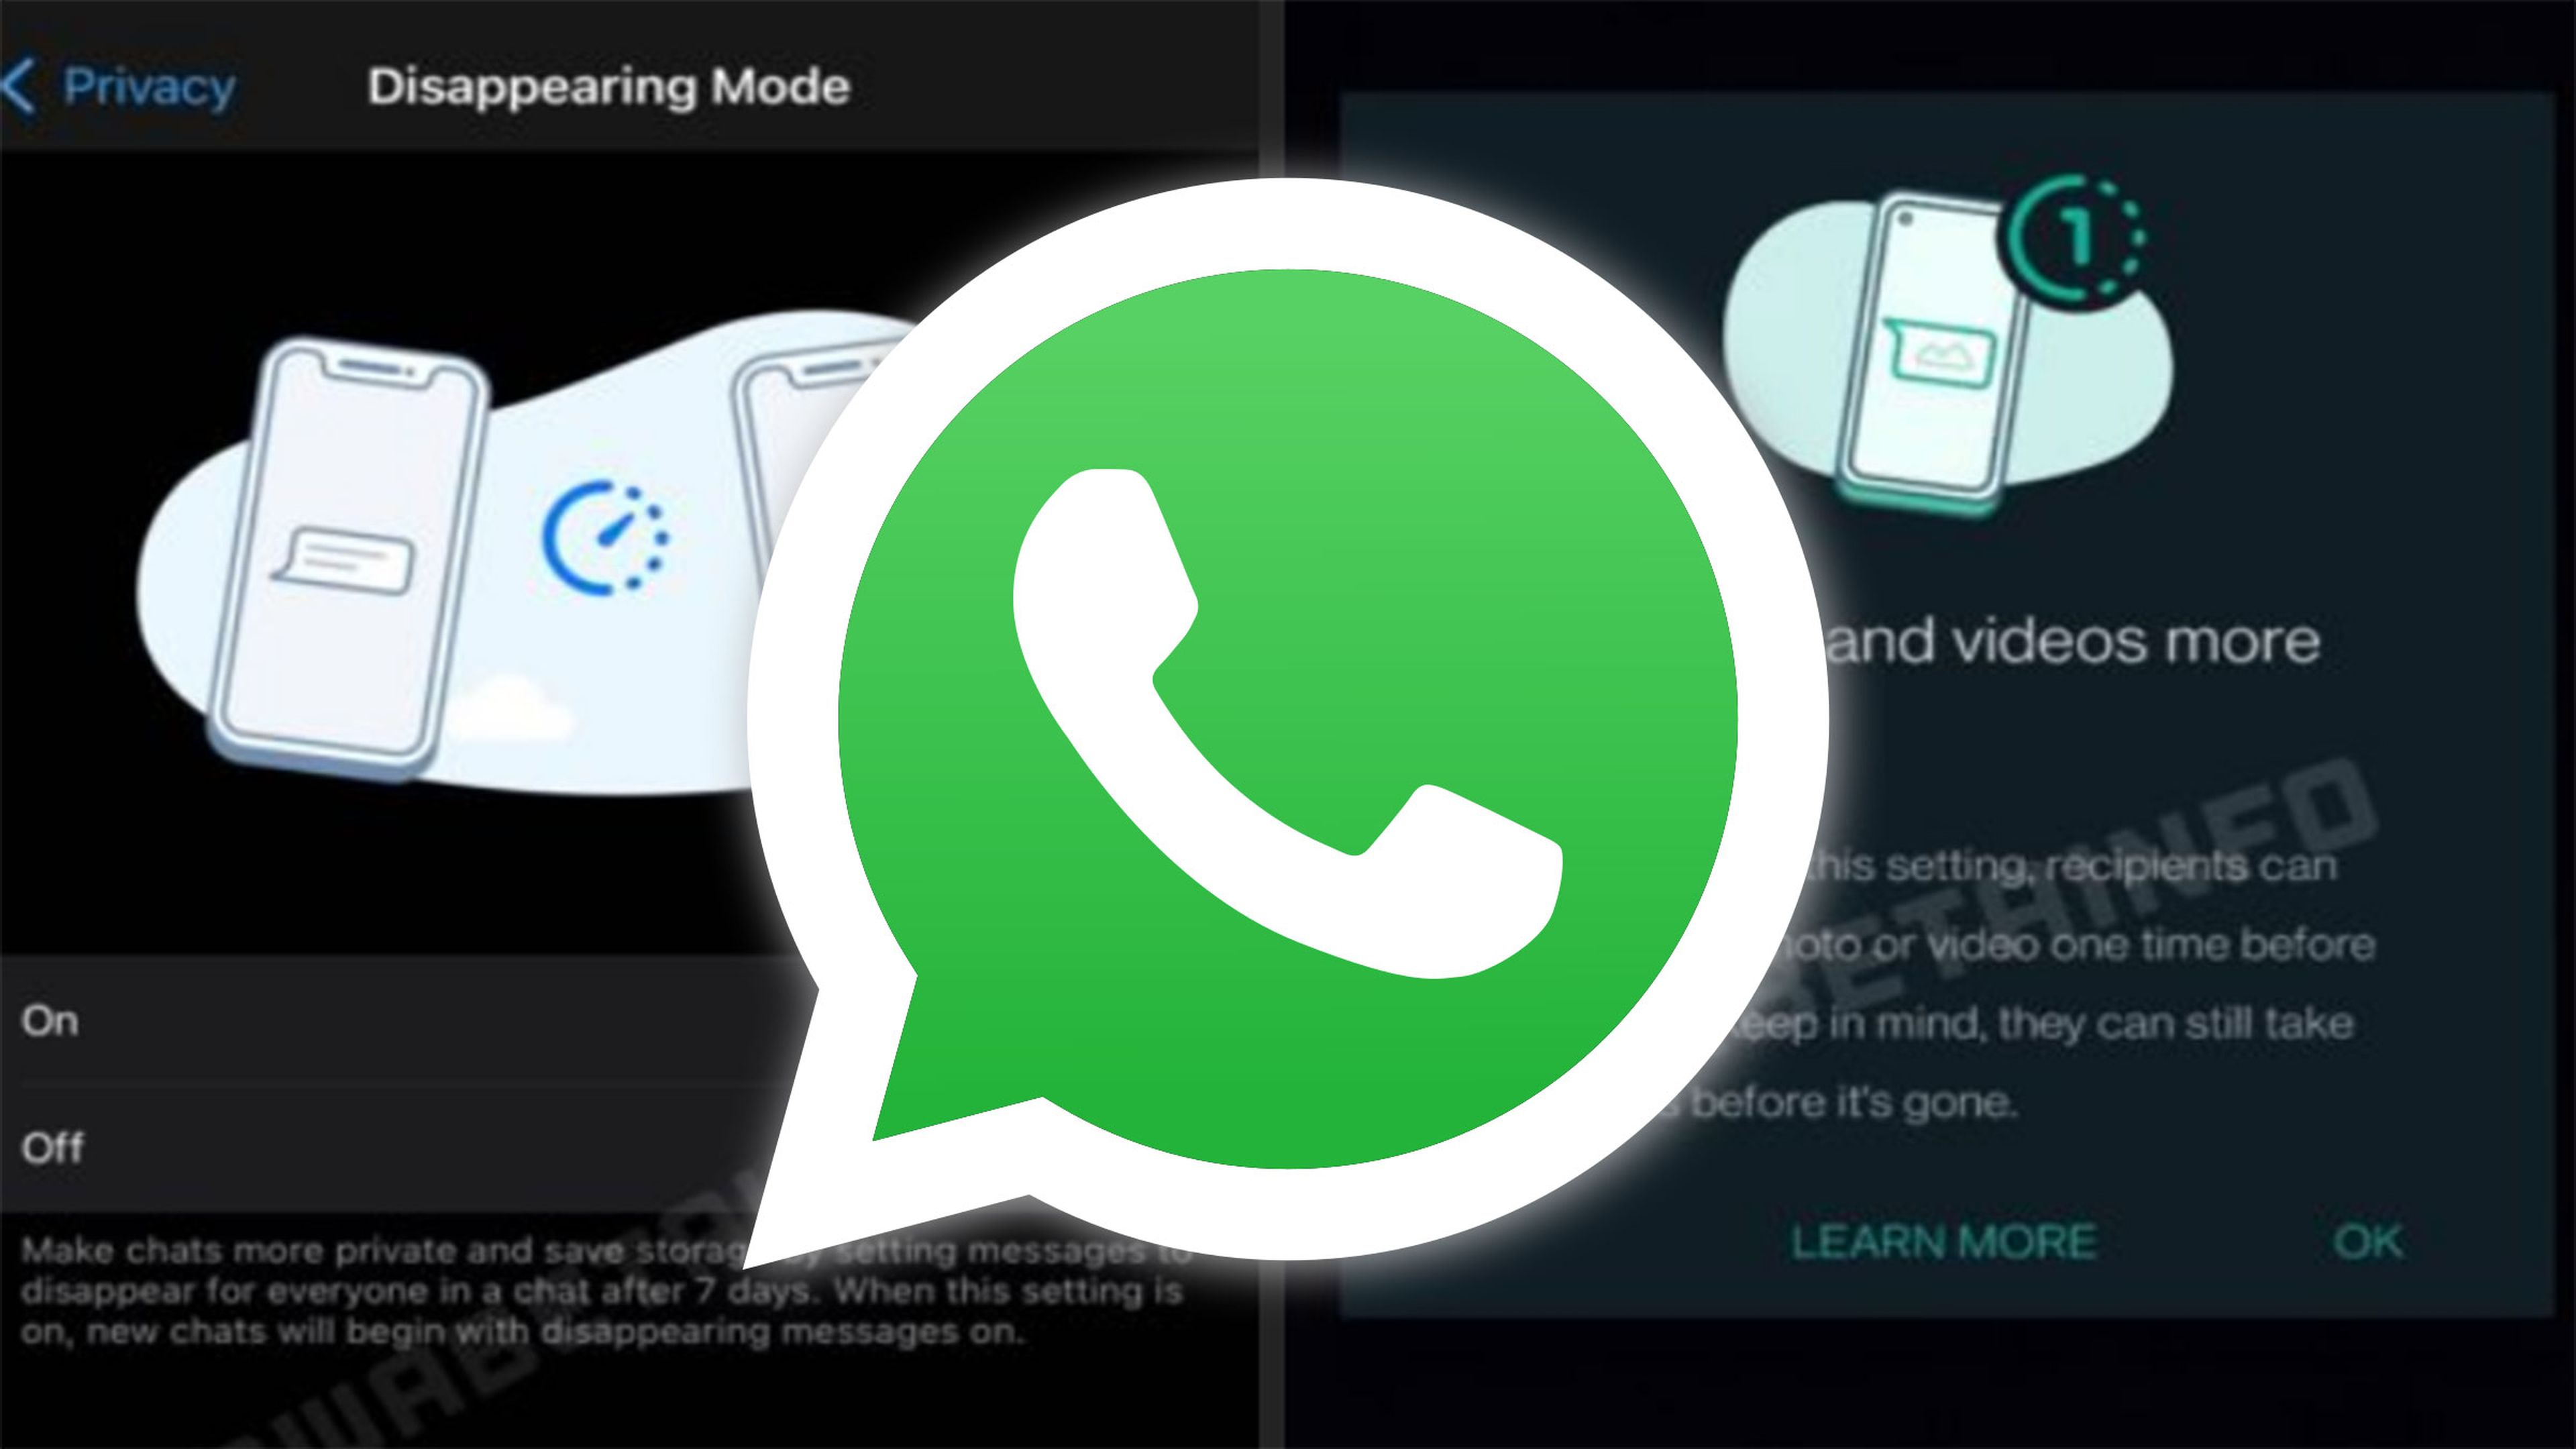 WhatsApp modo desaparición y ver una vez